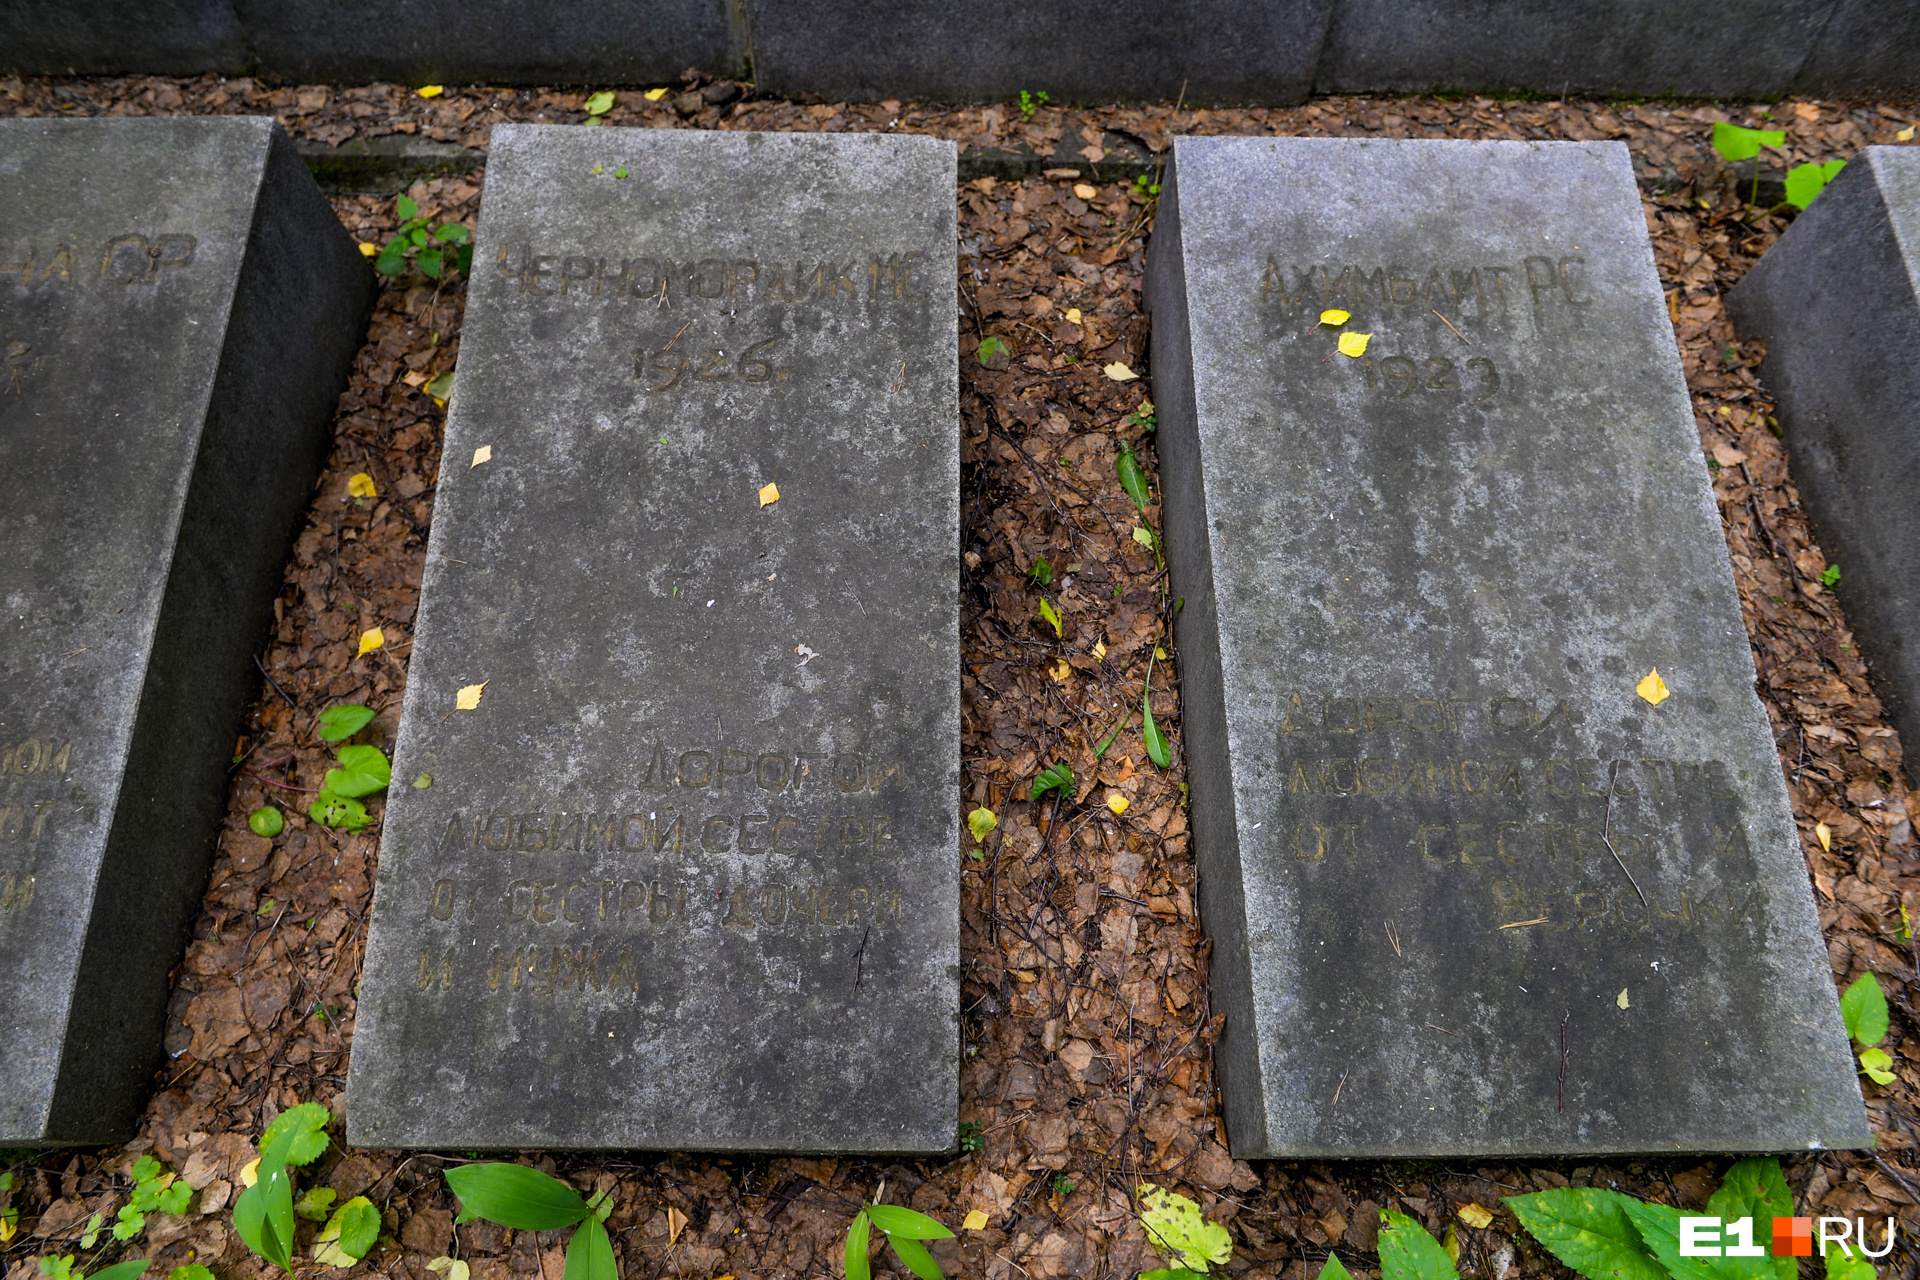 Надписи на надгробиях уже почти не различить